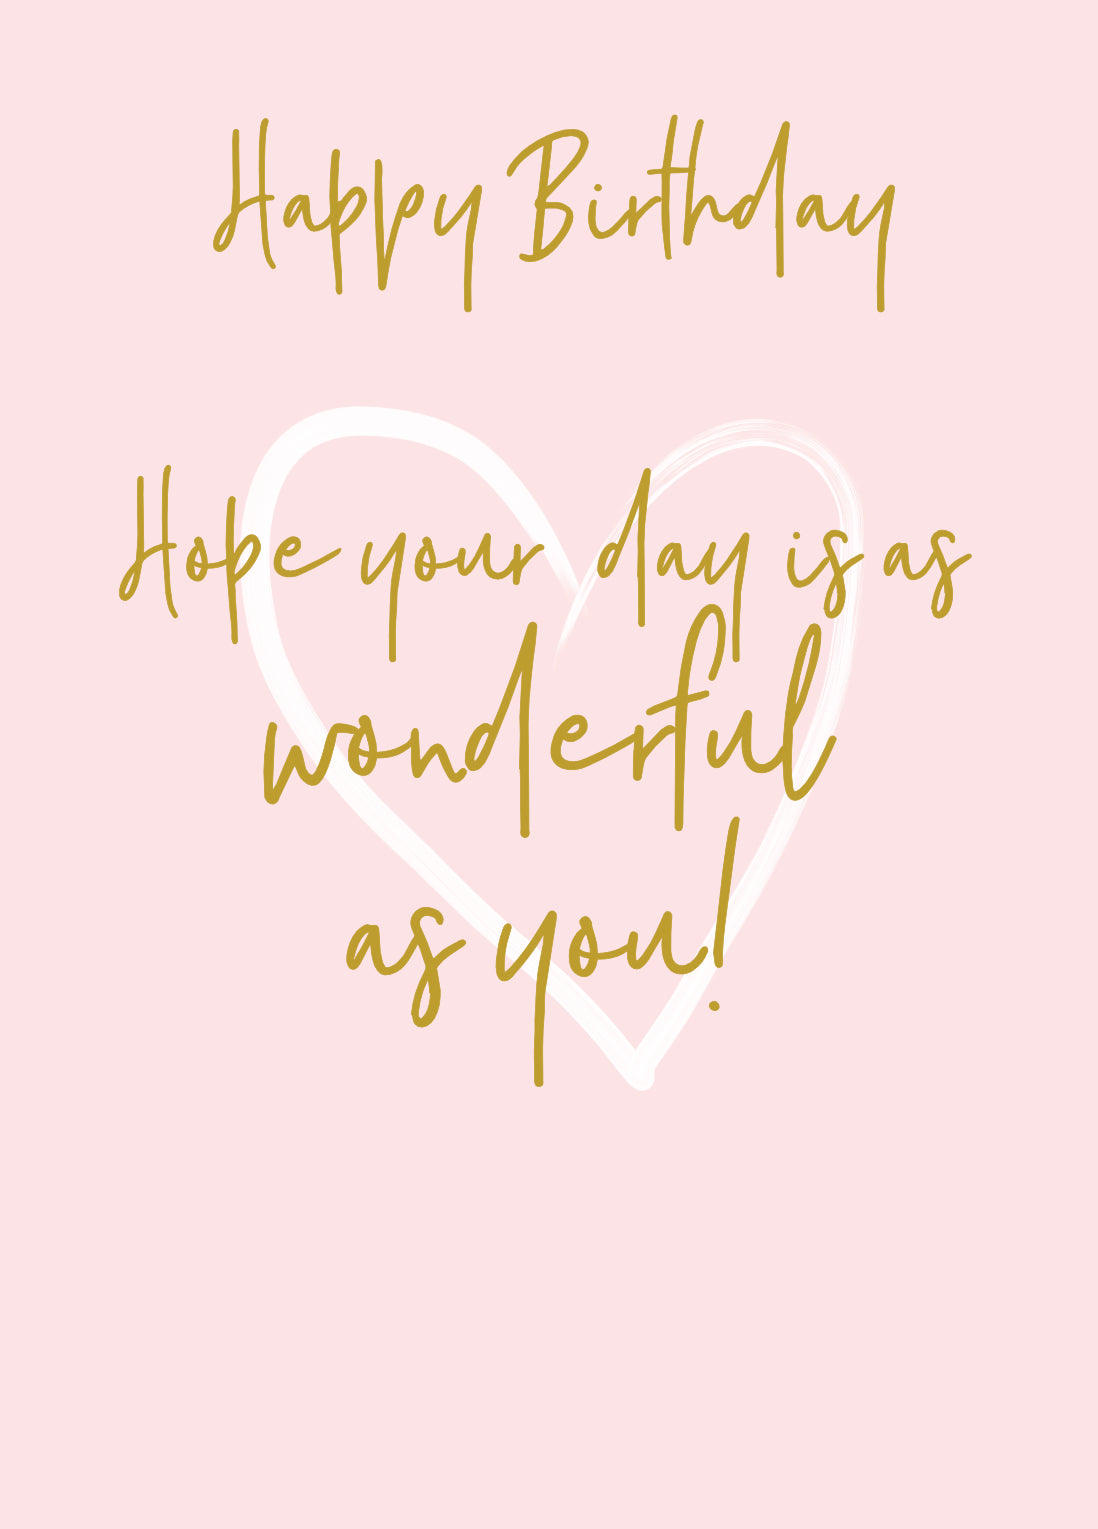 Wonderful You Wonderful As You Birthday Card - Foil